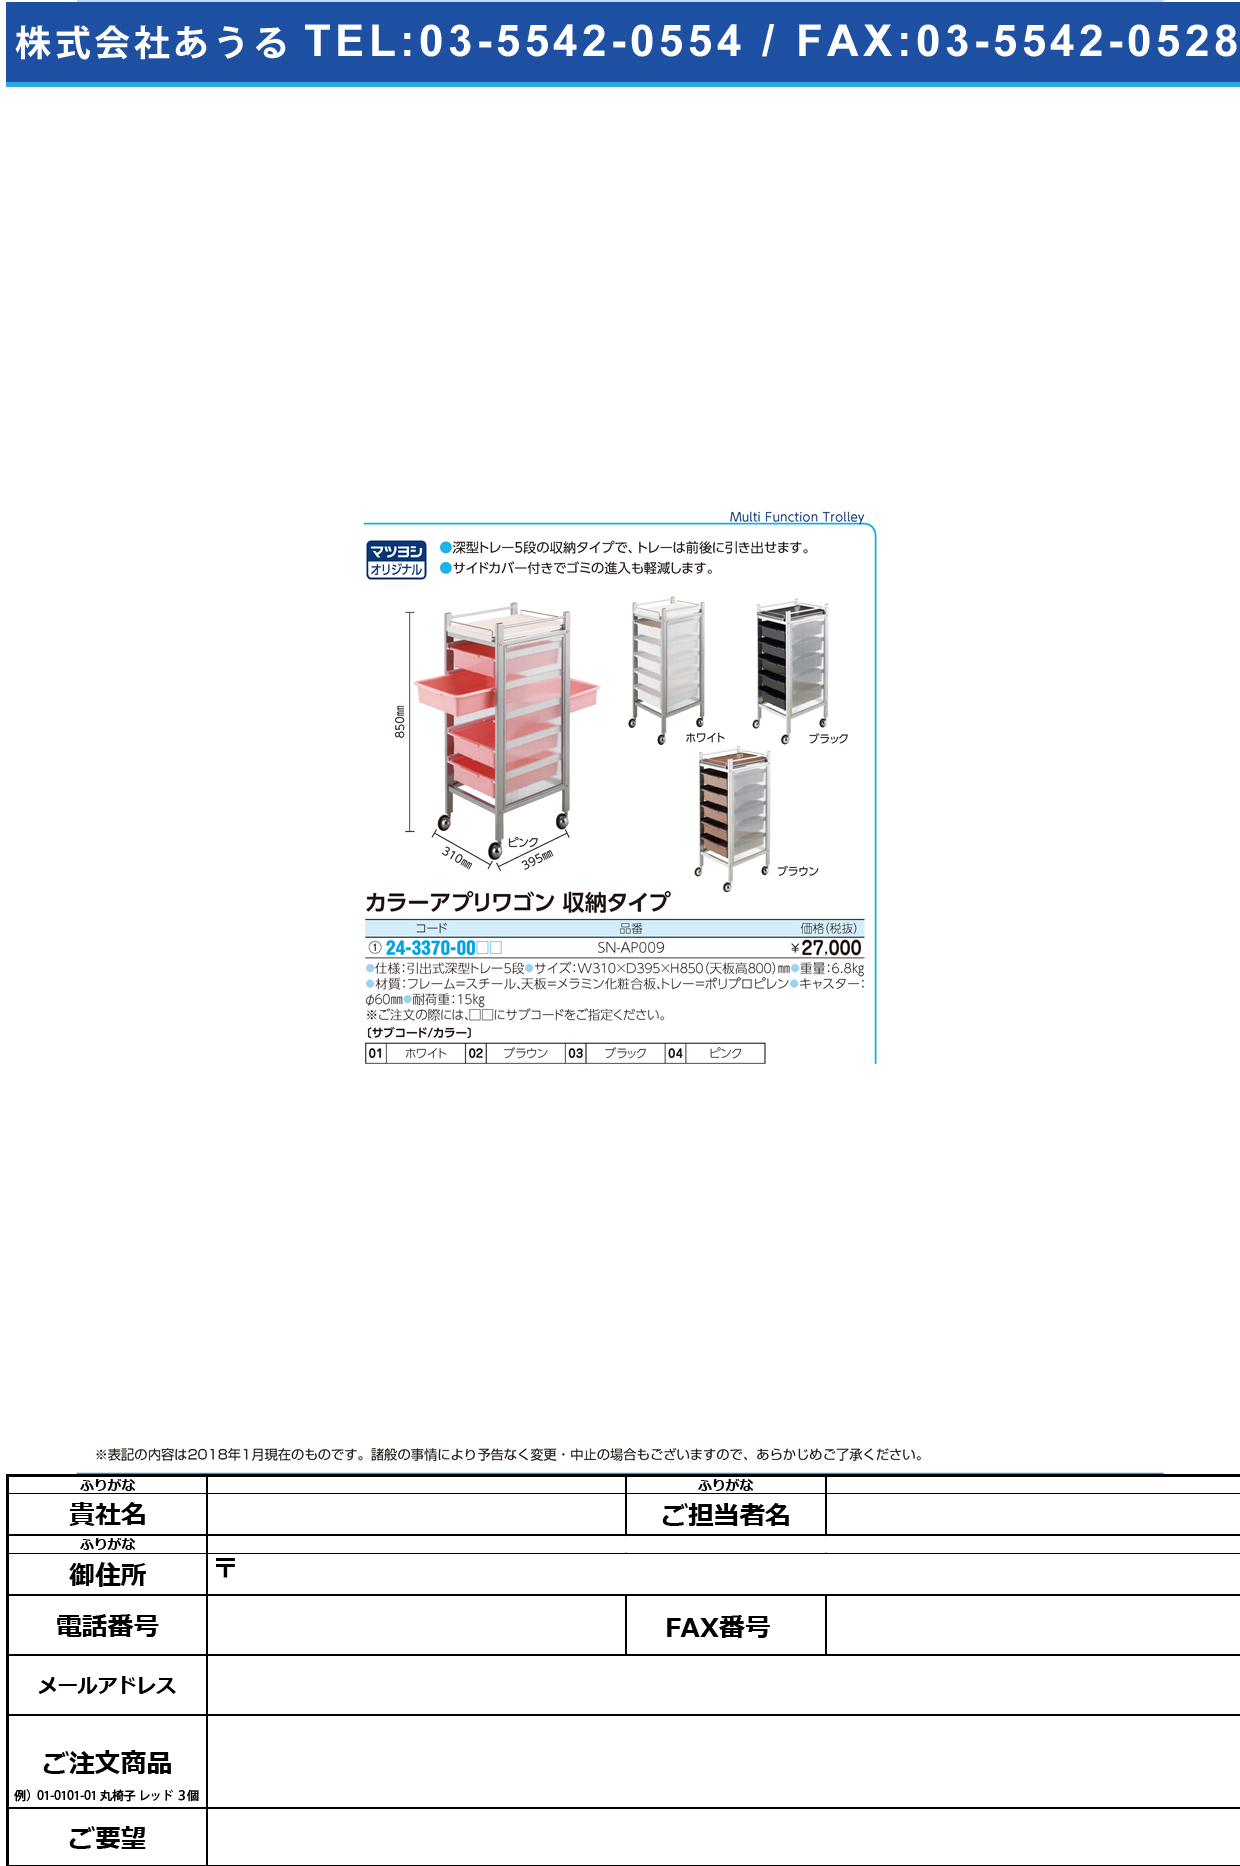 (24-3370-00)カラーアプリワゴン（収納タイプ） SN-AP009 ｶﾗｰｱﾌﾟﾘﾜｺﾞﾝｼｭｳﾉｳﾀｲﾌﾟ ブラウン【1台単位】【2019年カタログ商品】